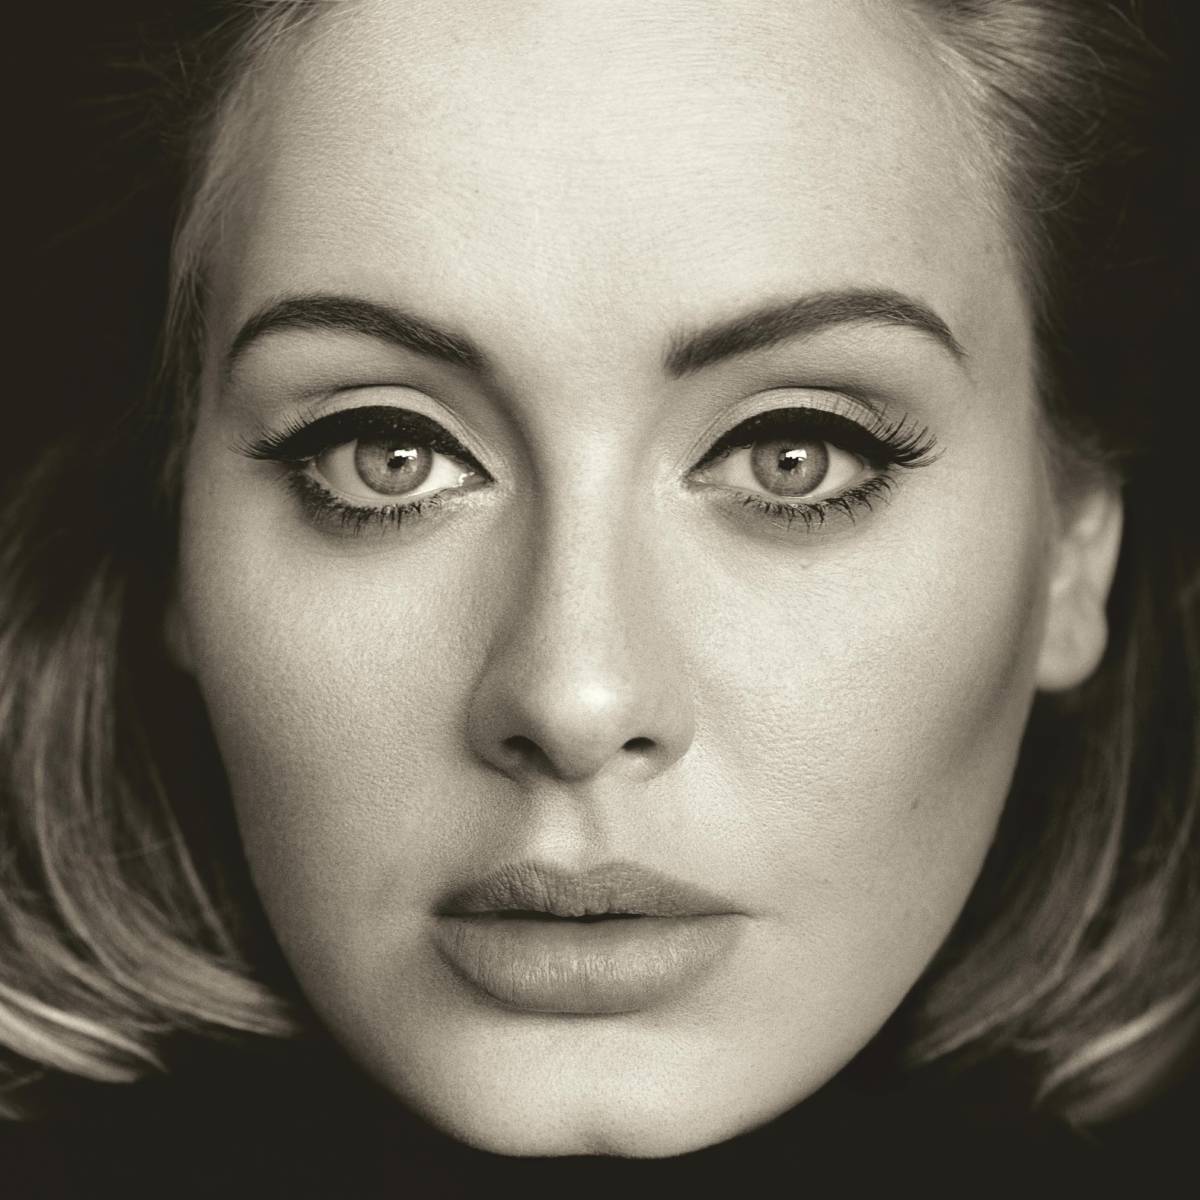 "25" (cover of Adele's third studio album)